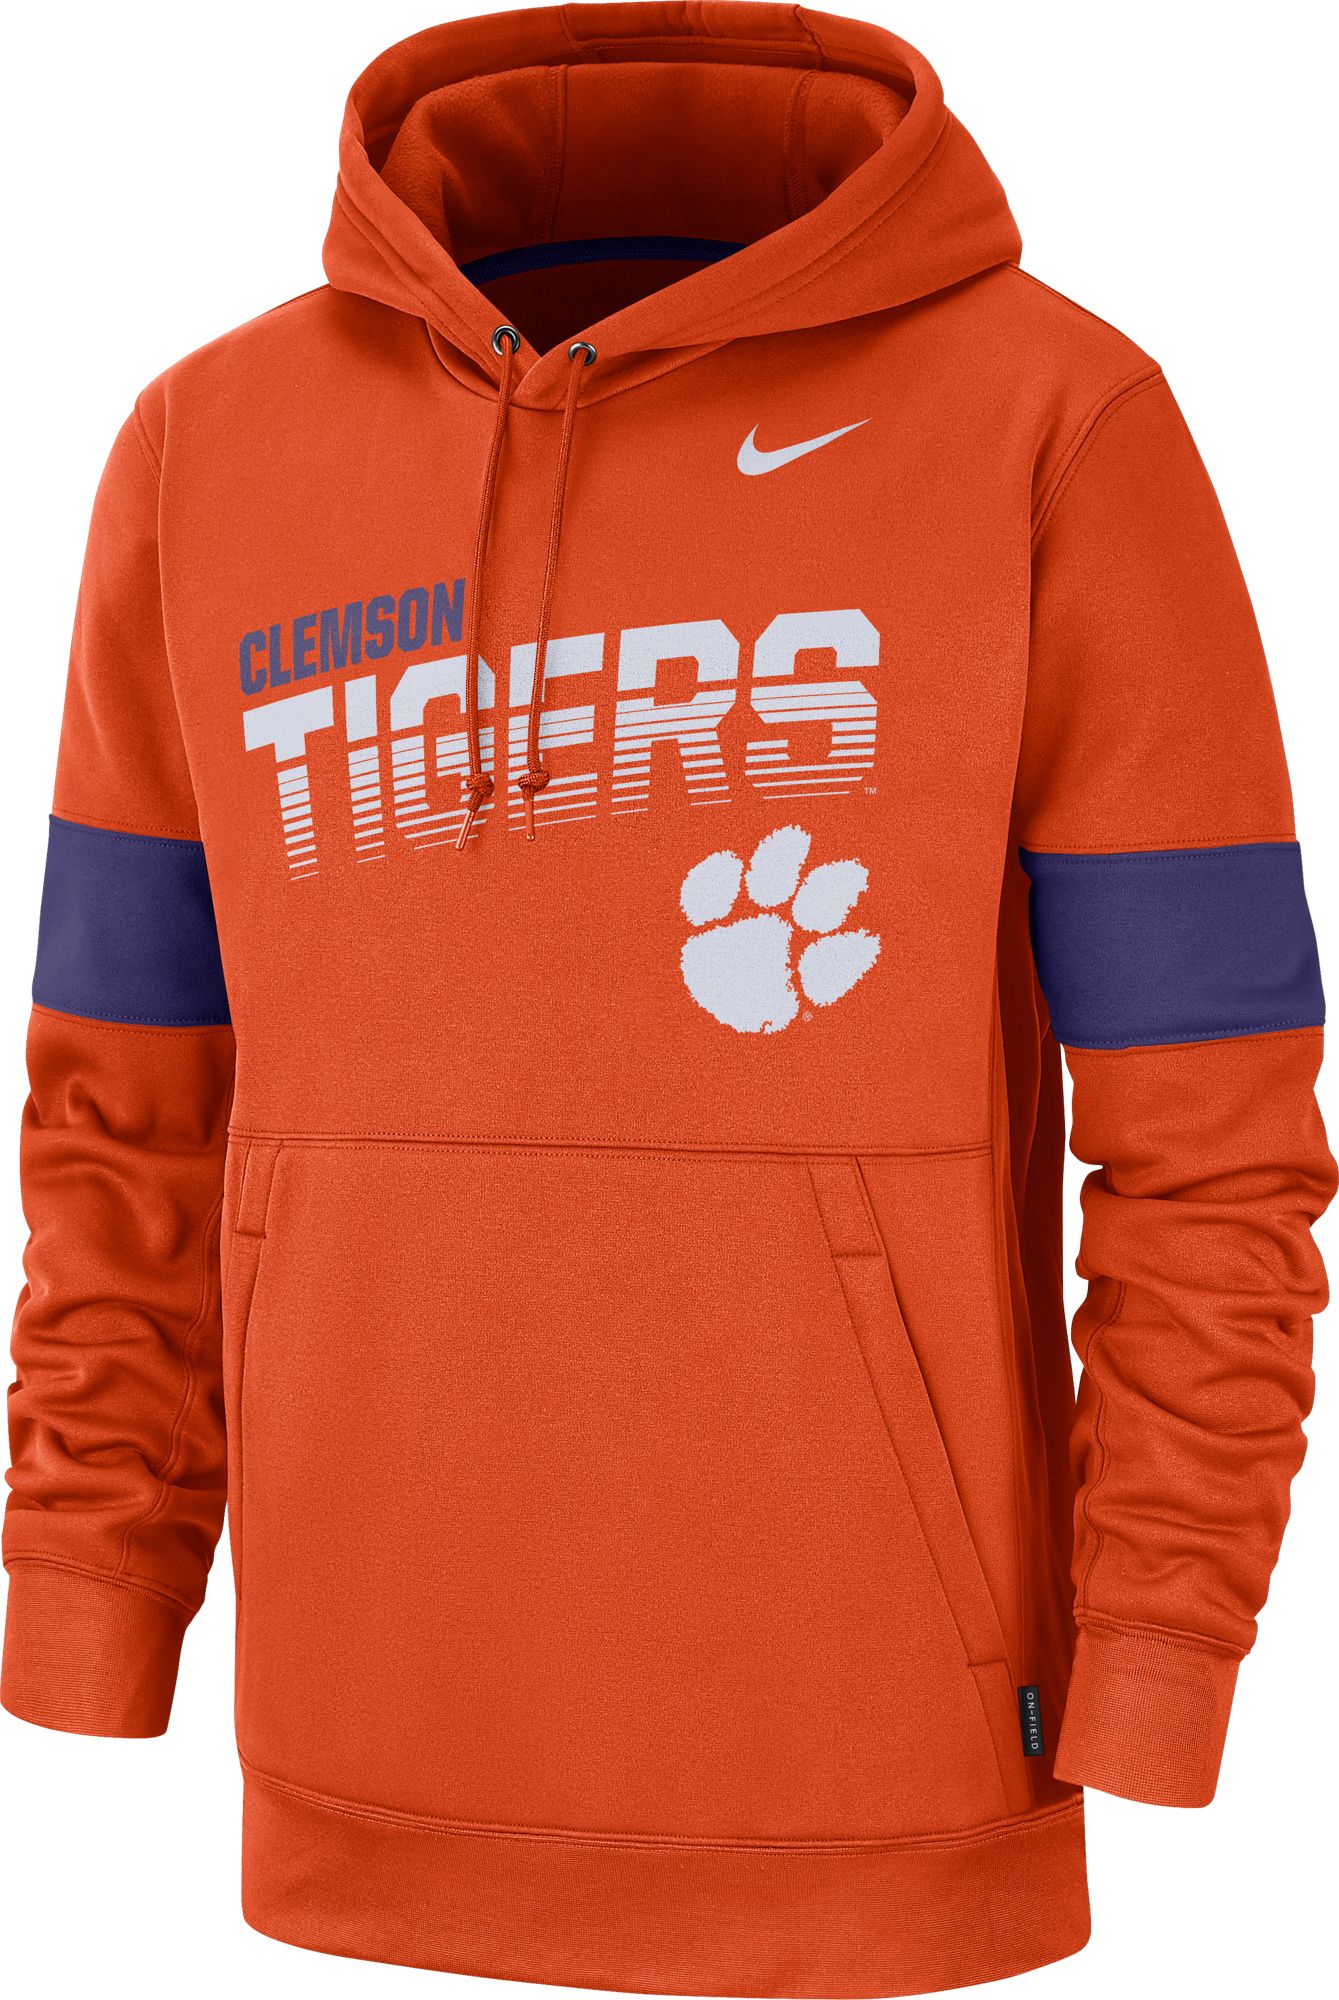 clemson tigers hoodie